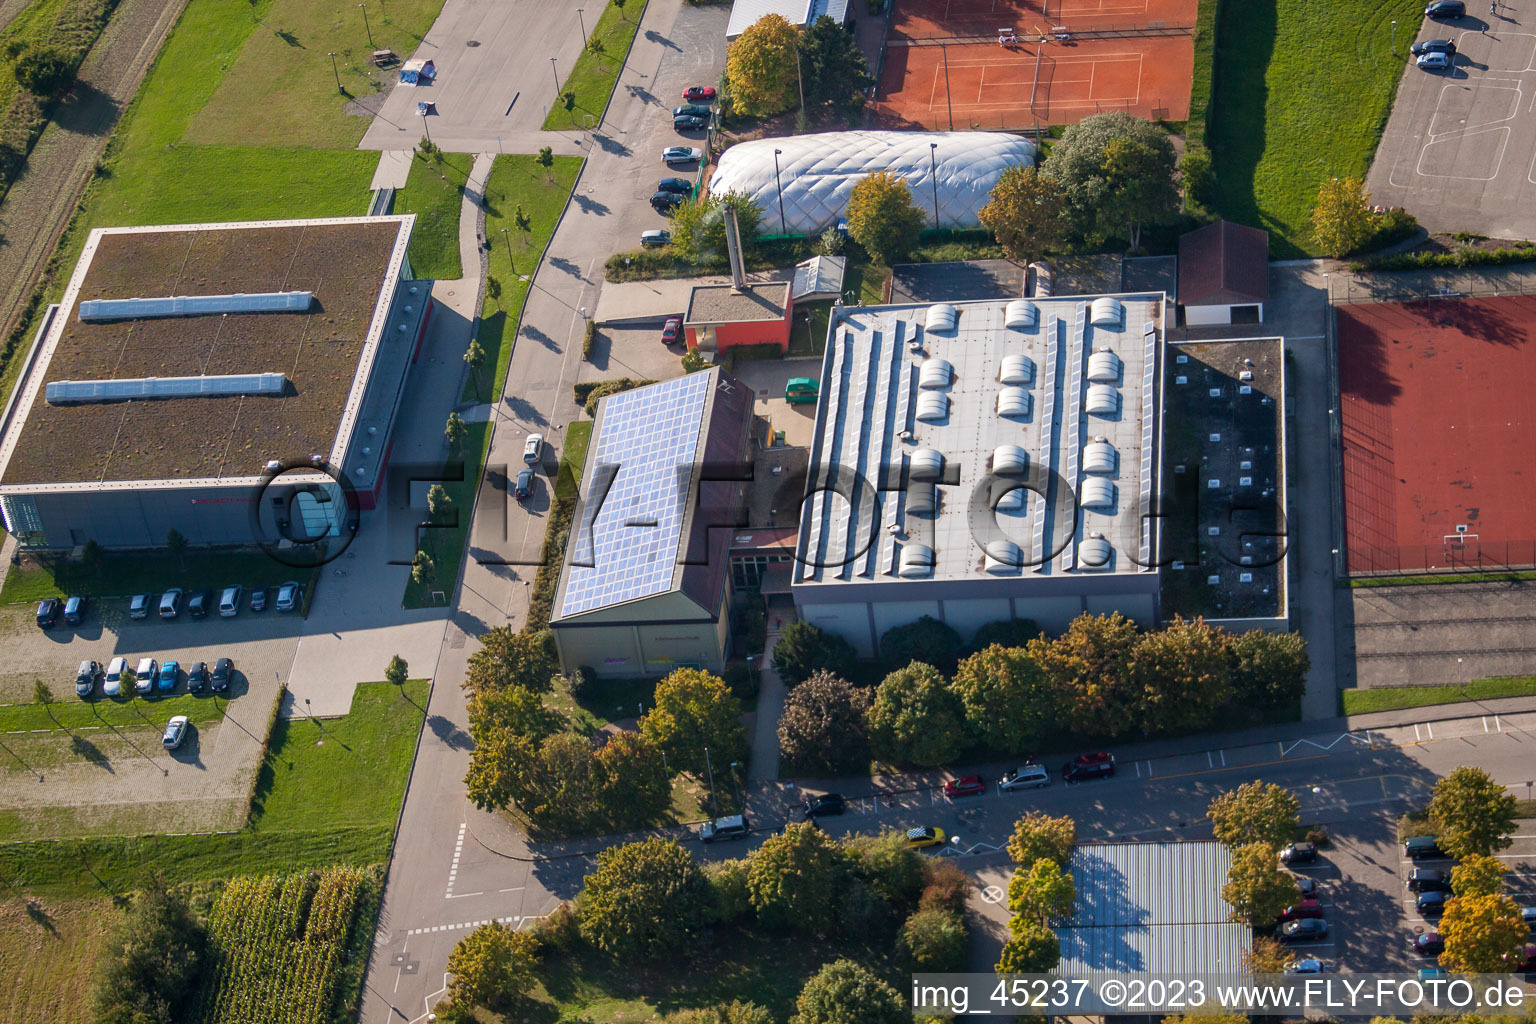 Ensemble des terrains de sport du TC Langensteinbach et du lycée Karlsbad à le quartier Langensteinbach in Karlsbad dans le département Bade-Wurtemberg, Allemagne hors des airs